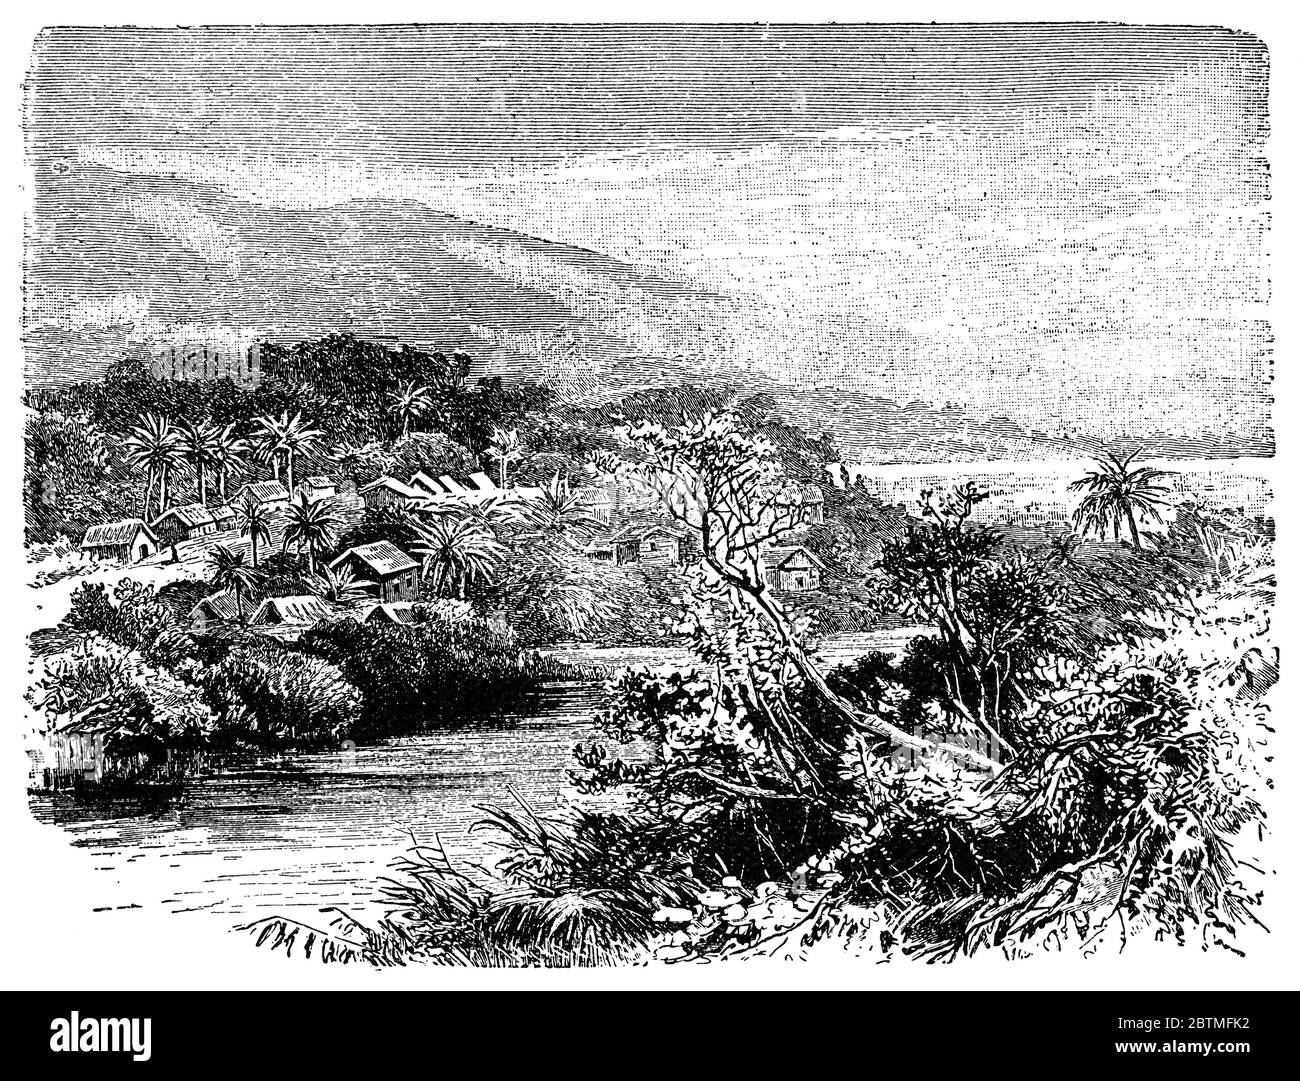 Limbe (Victoria von 1858 bis 1982) ist eine Küstenstadt in der Südwestregion Kameruns. Illustration des 19. Jahrhunderts. Weißer Hintergrund. Stockfoto